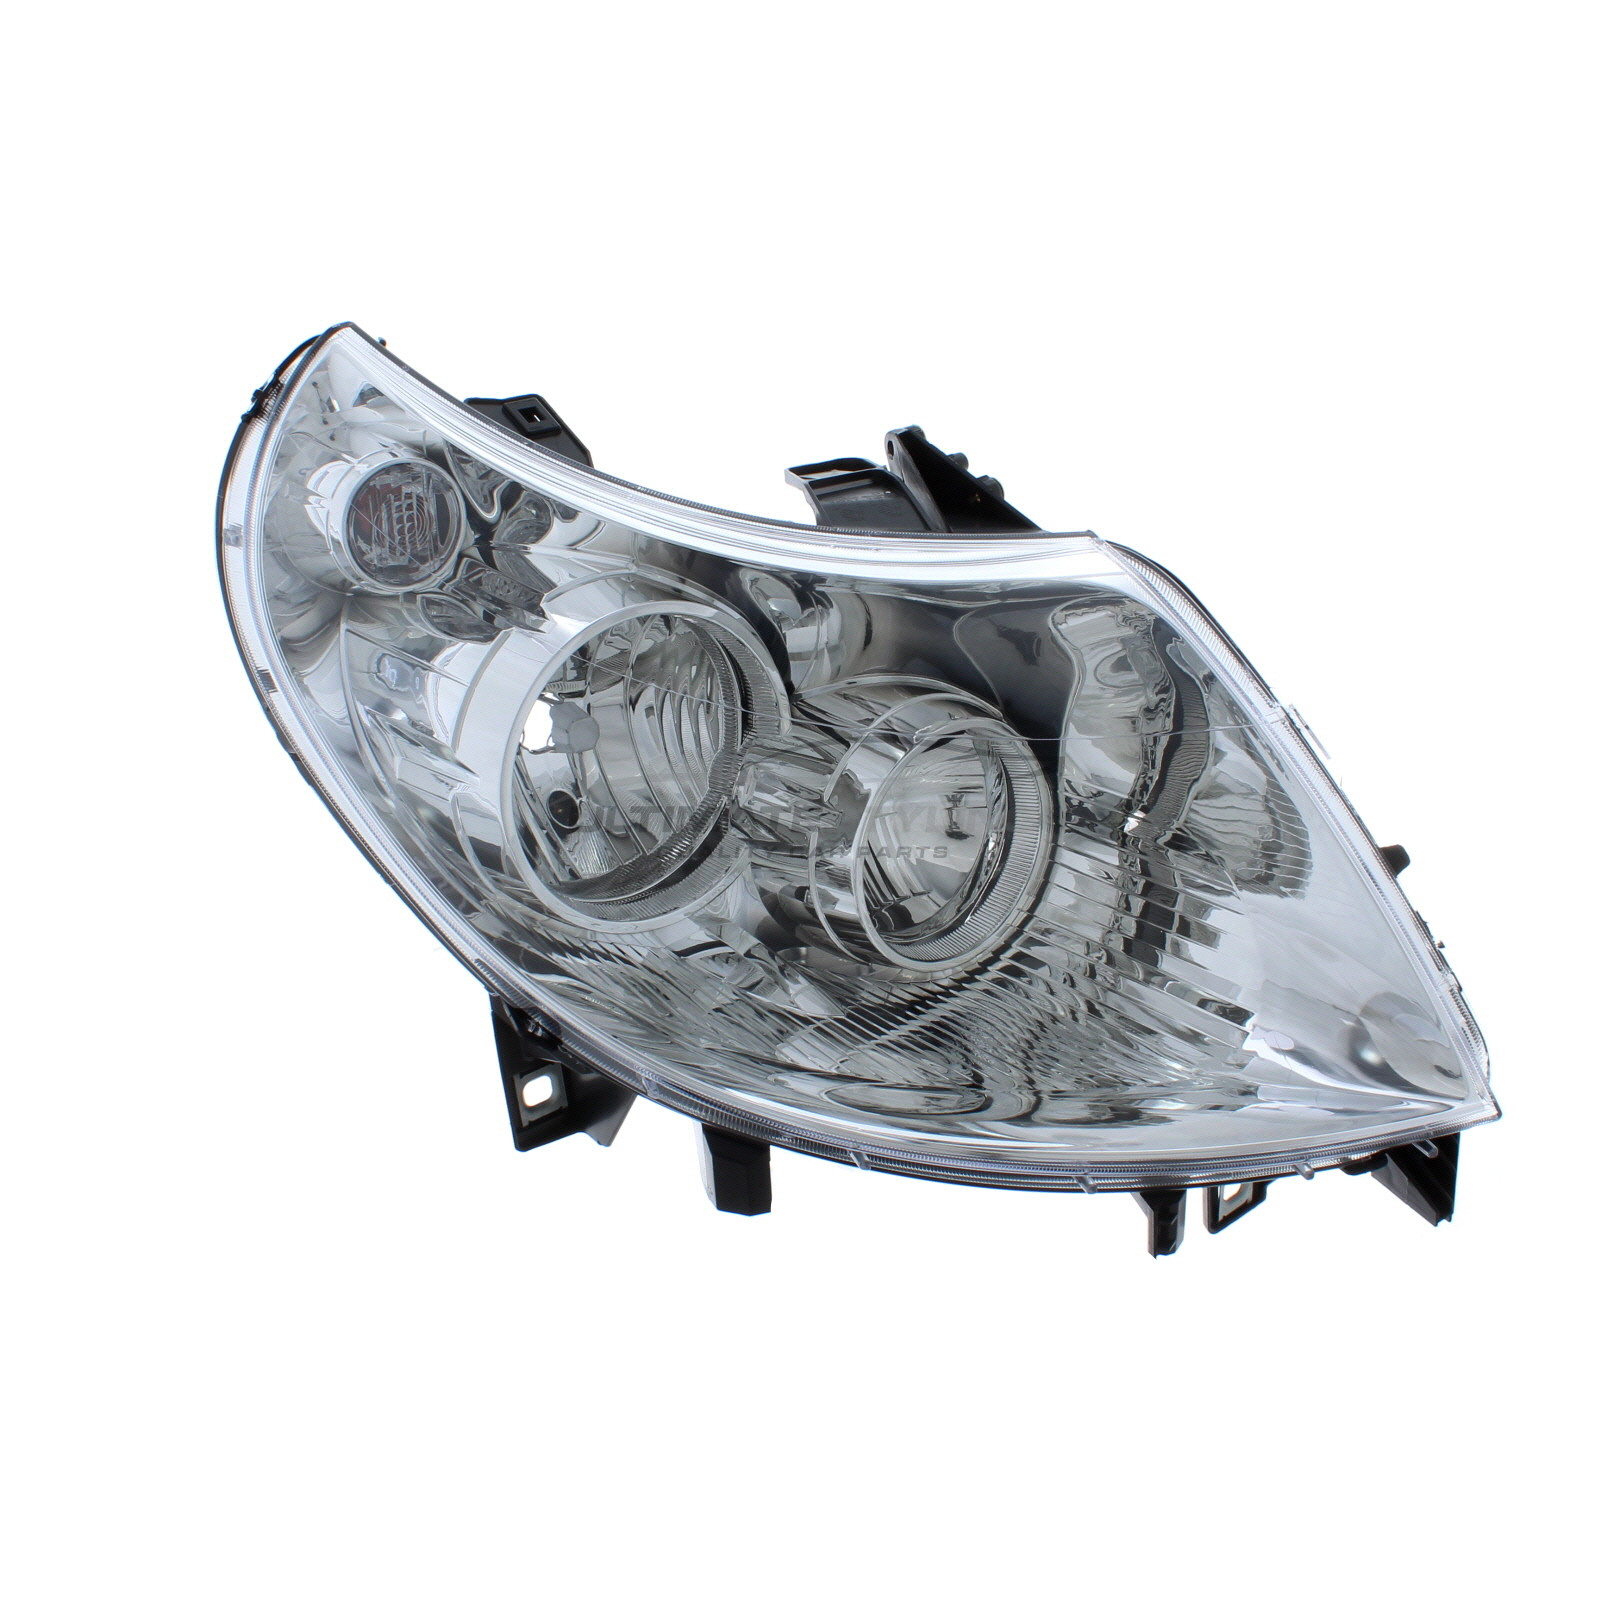 Headlight / Headlamp for Peugeot Boxer